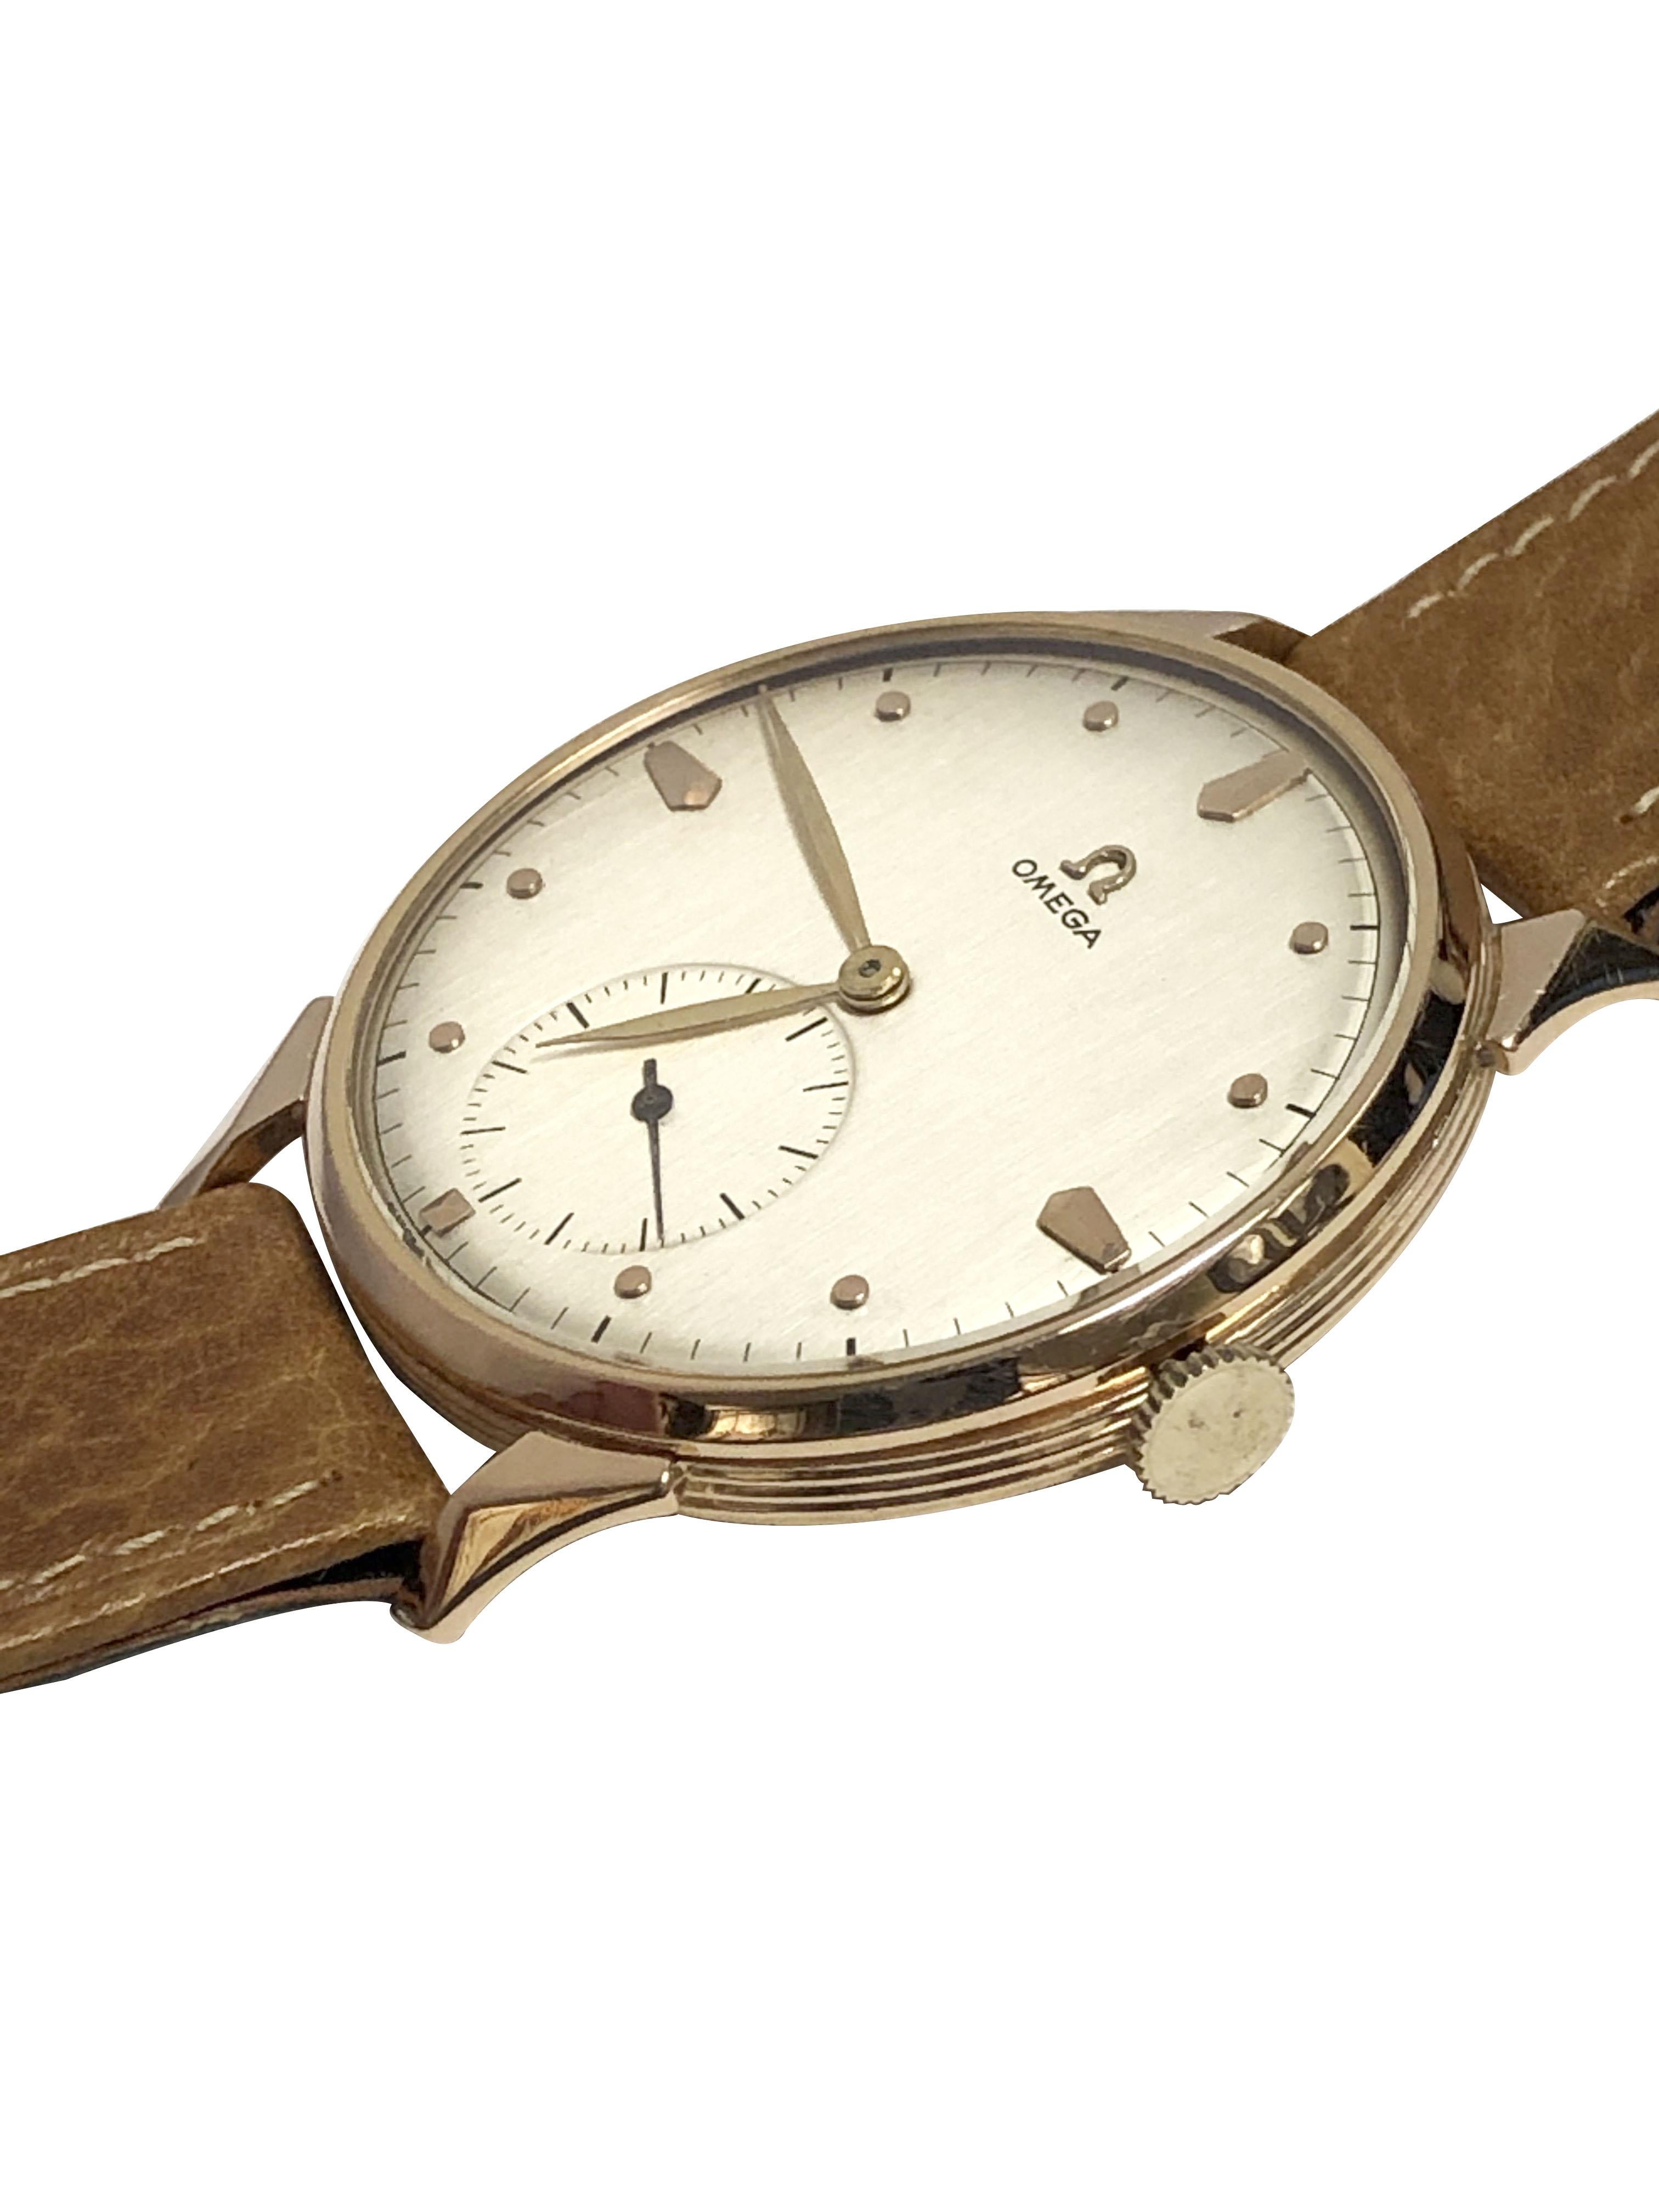 Omega-Armbanduhr aus den späten 1940er Jahren, 37 M.M., 3-teiliges Gehäuse aus 18 Karat Roségold für den südamerikanischen Markt. Caliber 265, 15 Juwel, Mechanisches, Handaufzugswerk. Silbernes Satin-Zifferblatt mit erhabenen Roségoldmarkierungen,